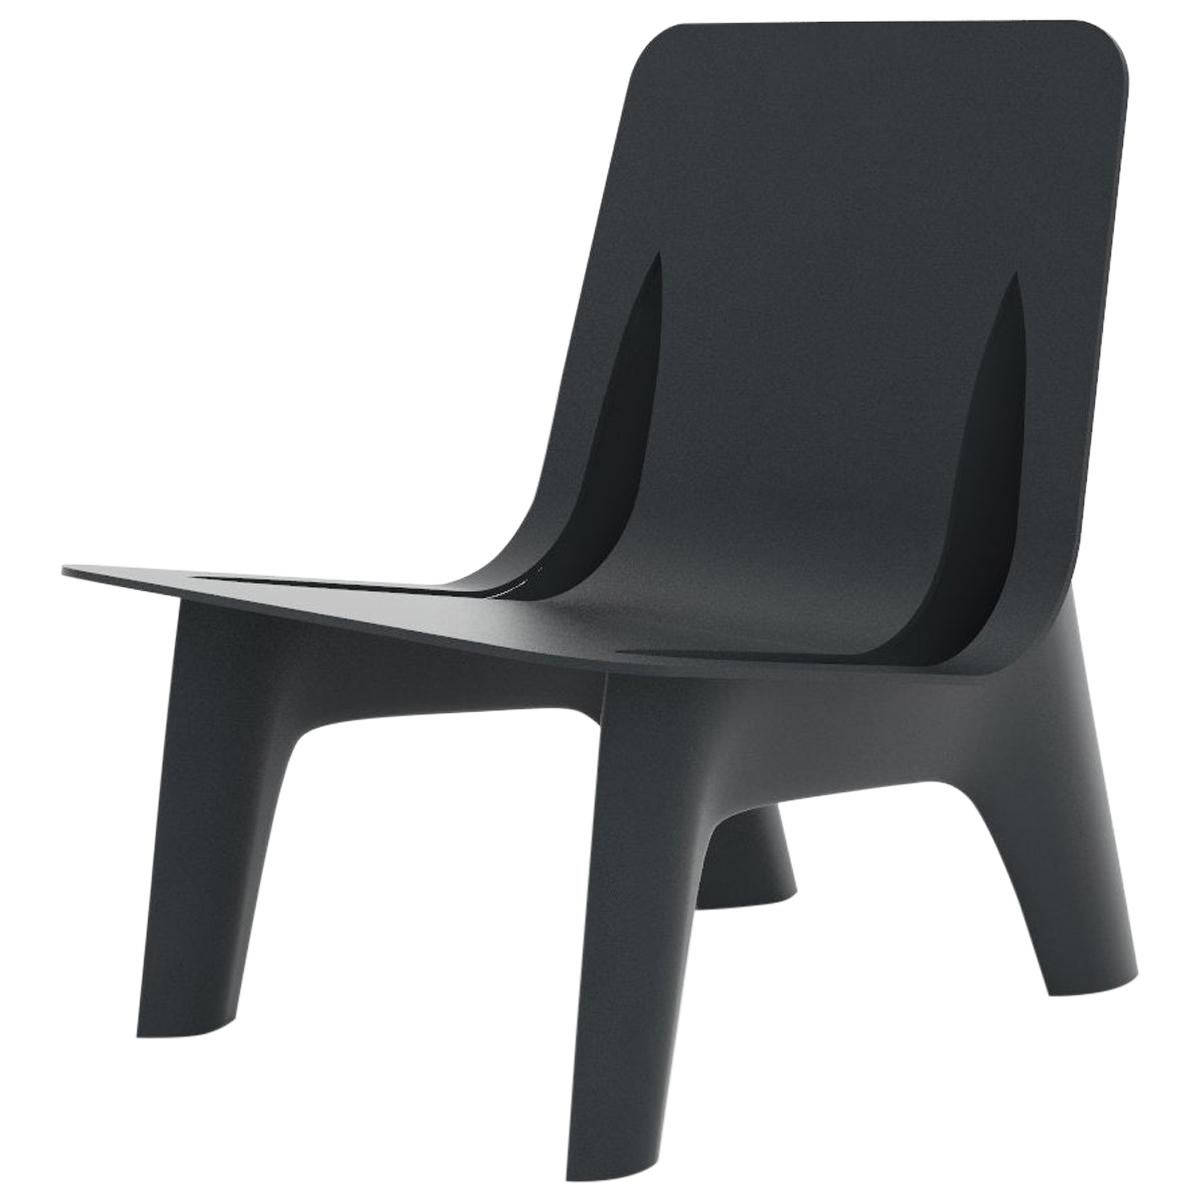 Chaise longue J-Chair en aluminium poli de couleur grise et graphite par Zieta